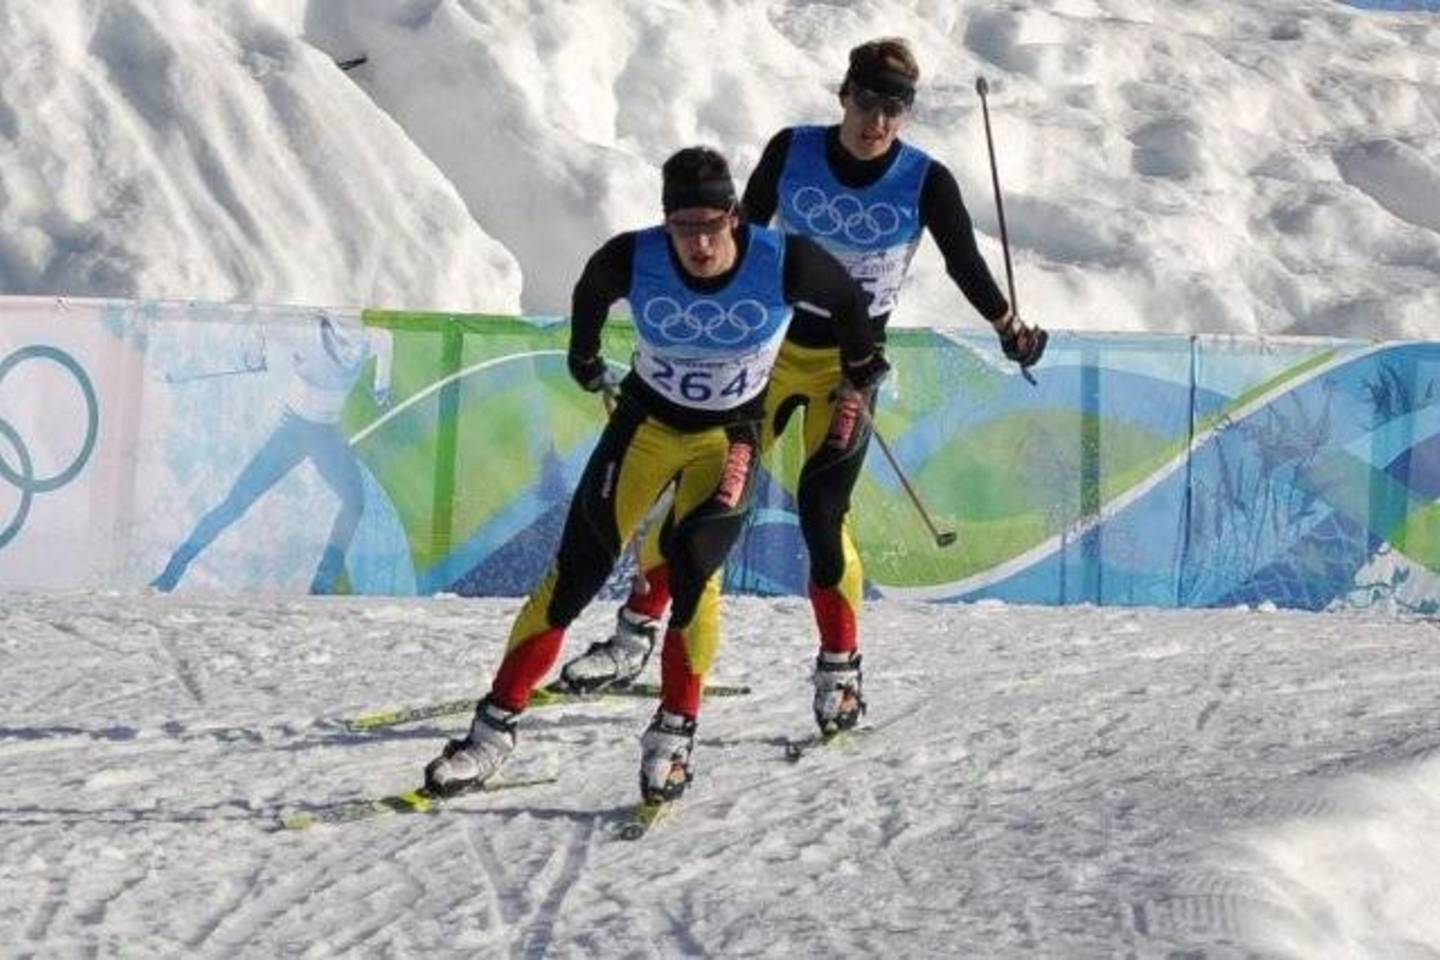  M.Strolia ir M.Vaičiulis olimpinės duonos paragavo 2010 m. Vankuveryje.<br> LTOK nuotr.